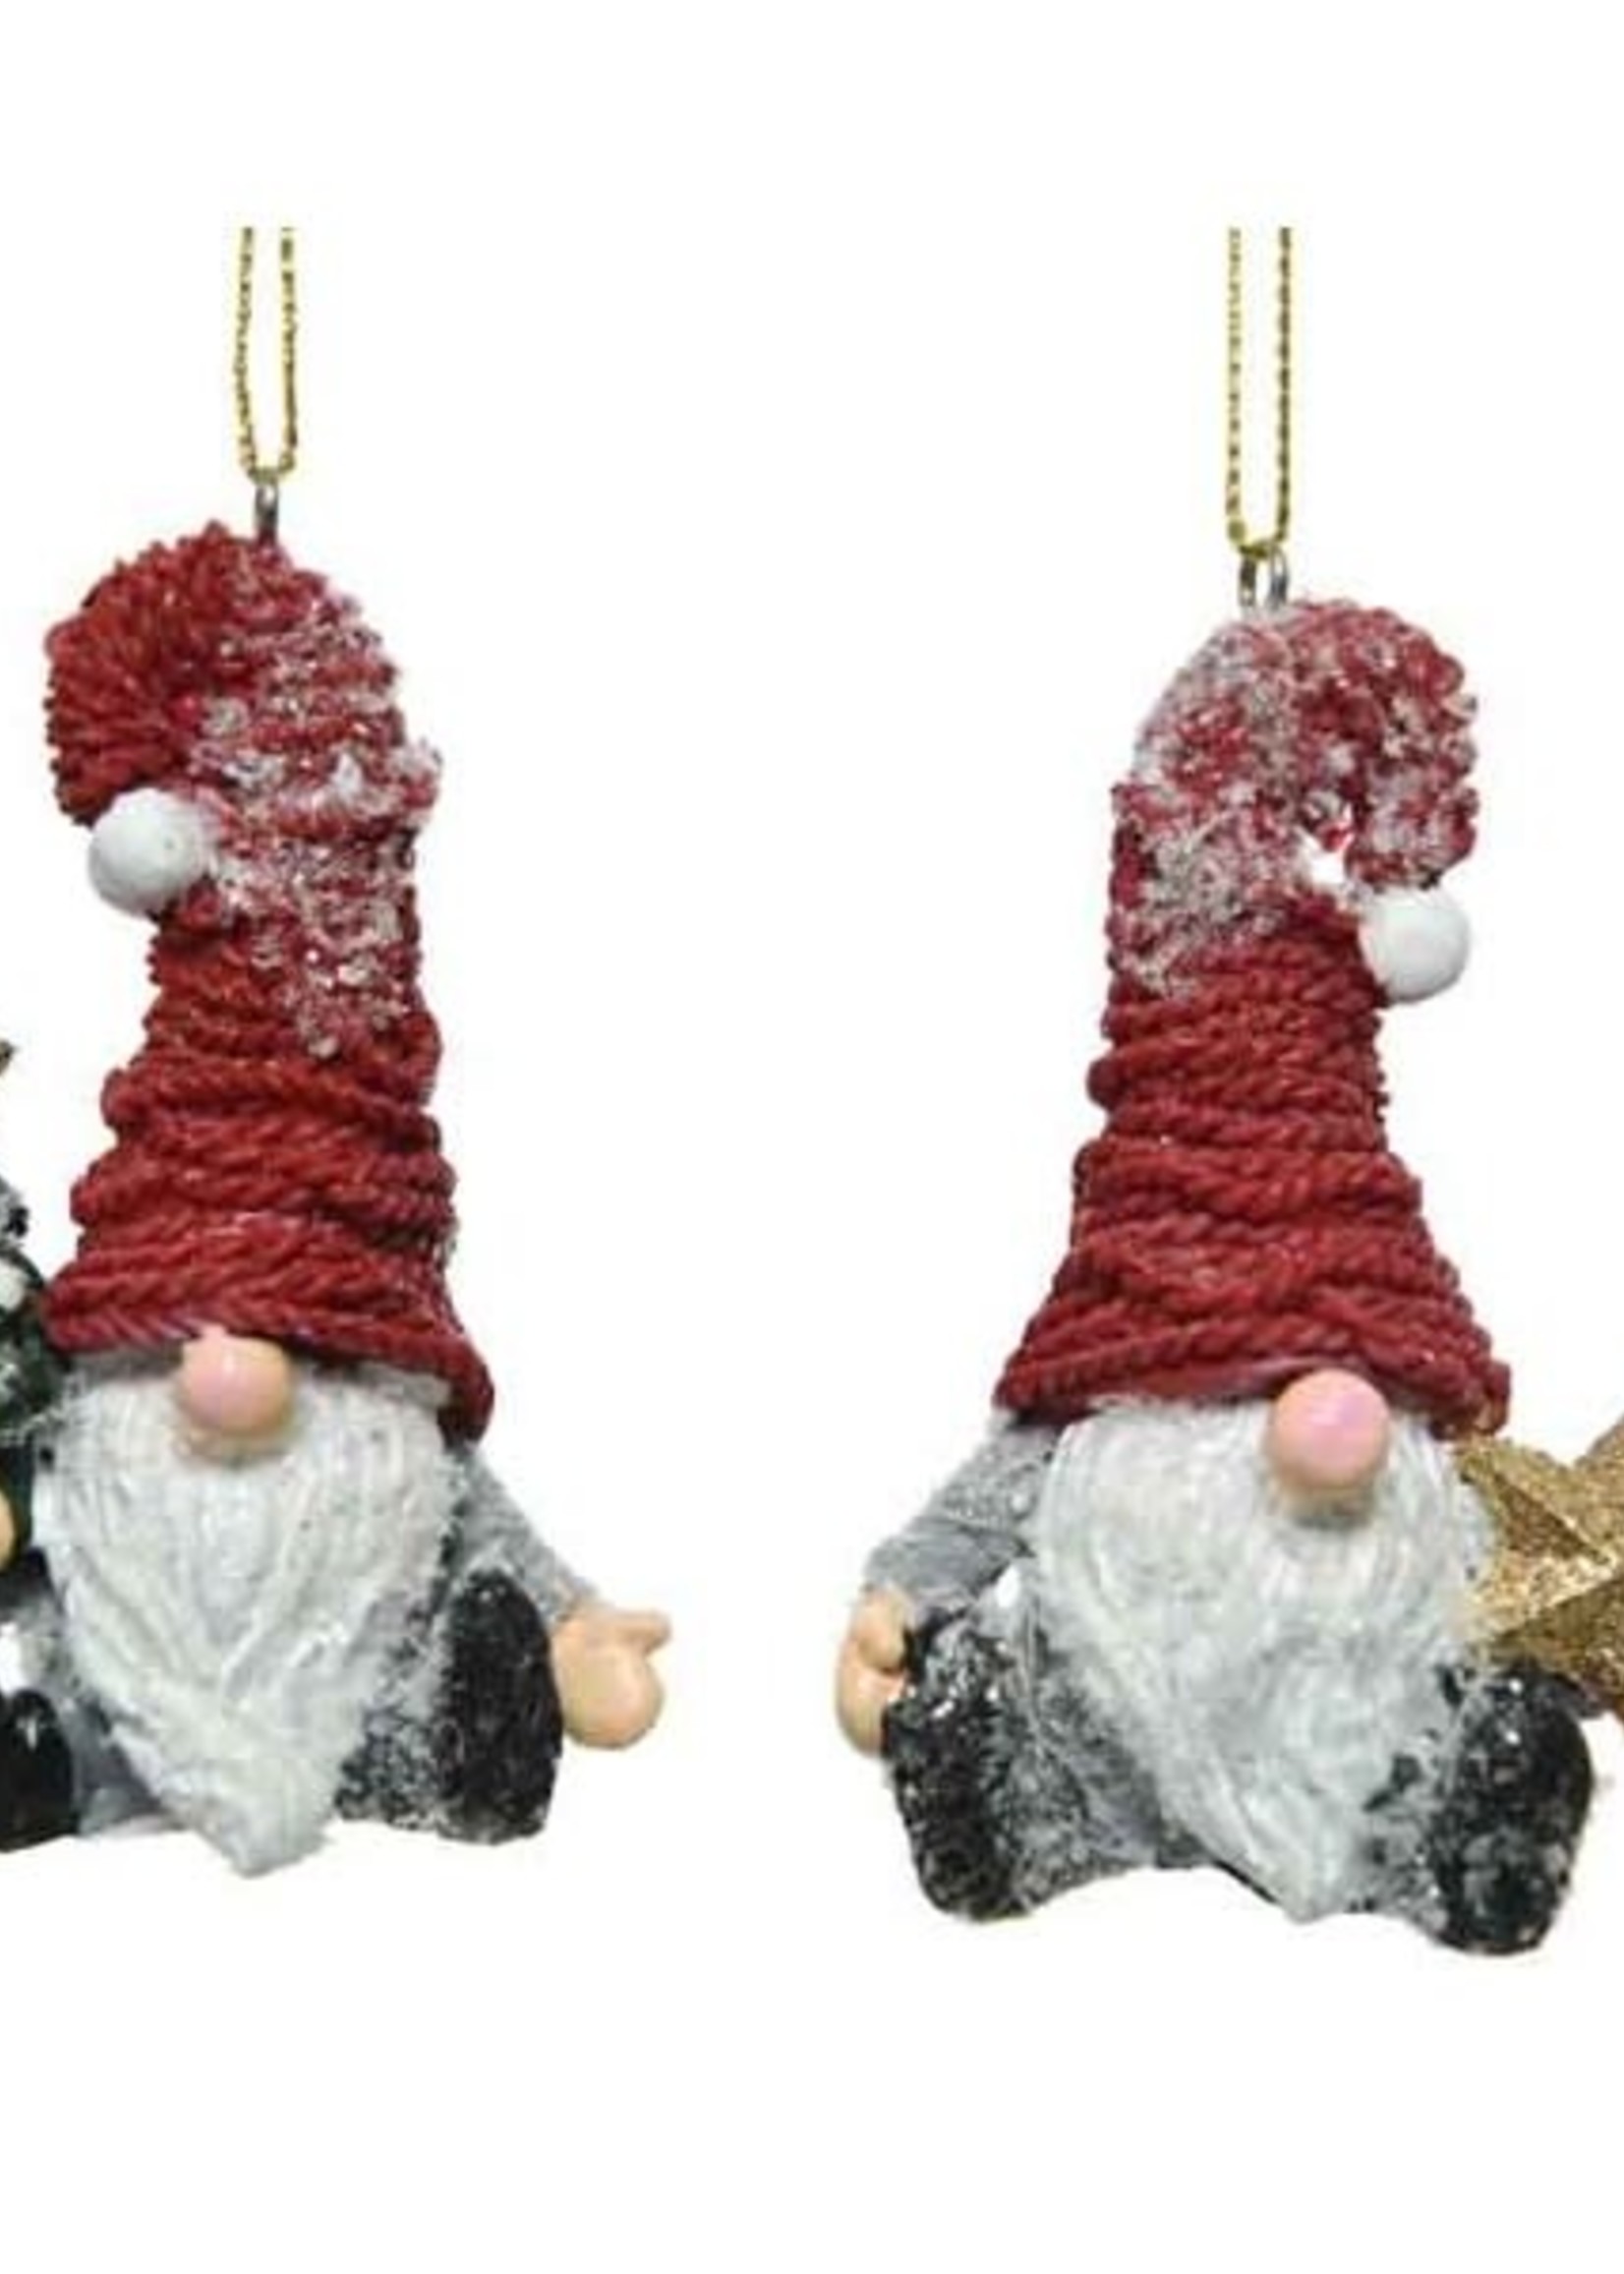 Decoris Santa Gnome Bauble 2 Assorted